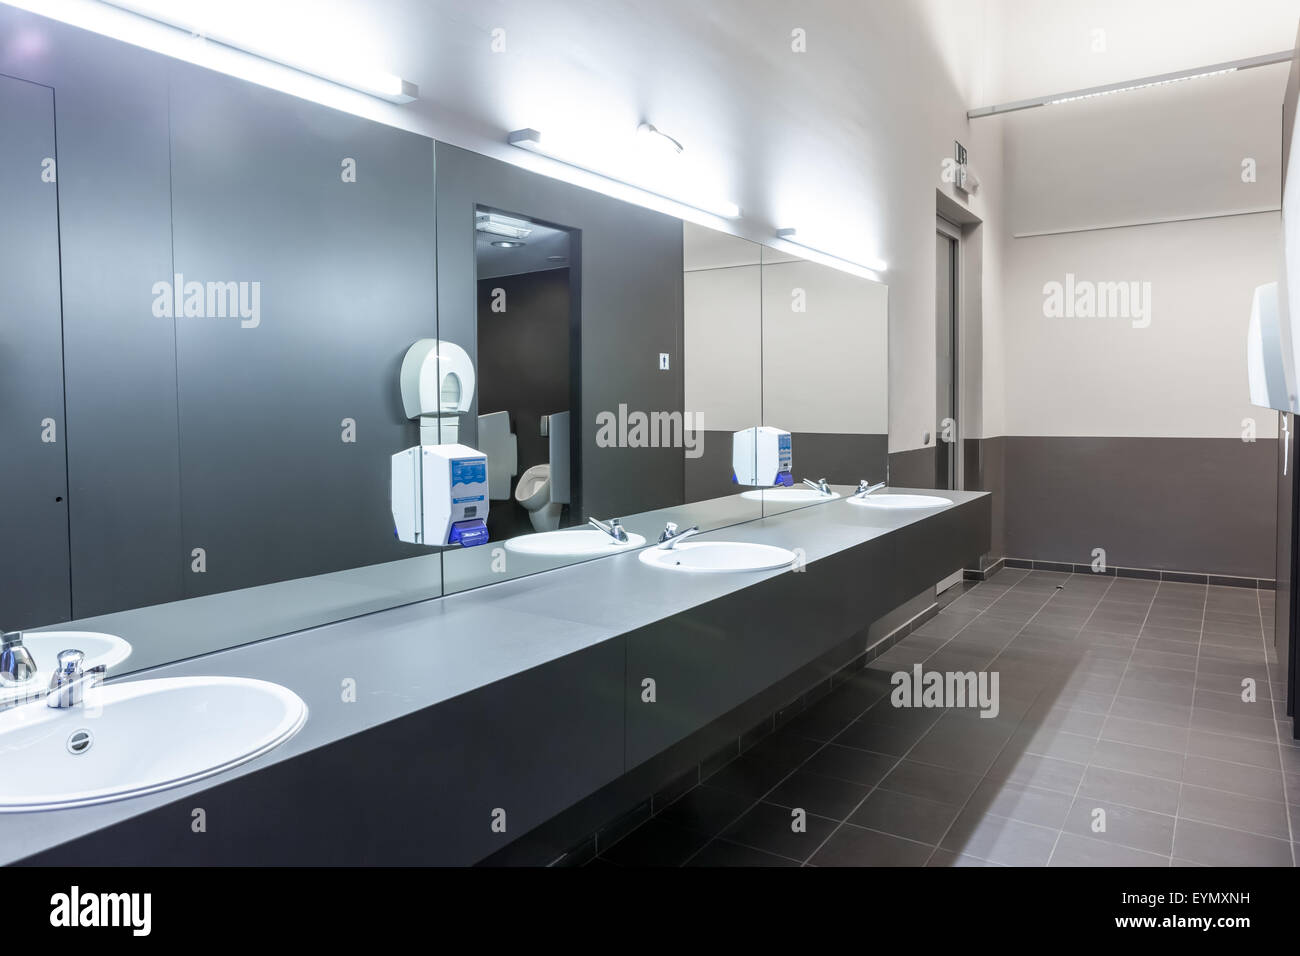 Dans les hommes il y a une grotte miroir sur le mur avec plusieurs lavabos Banque D'Images